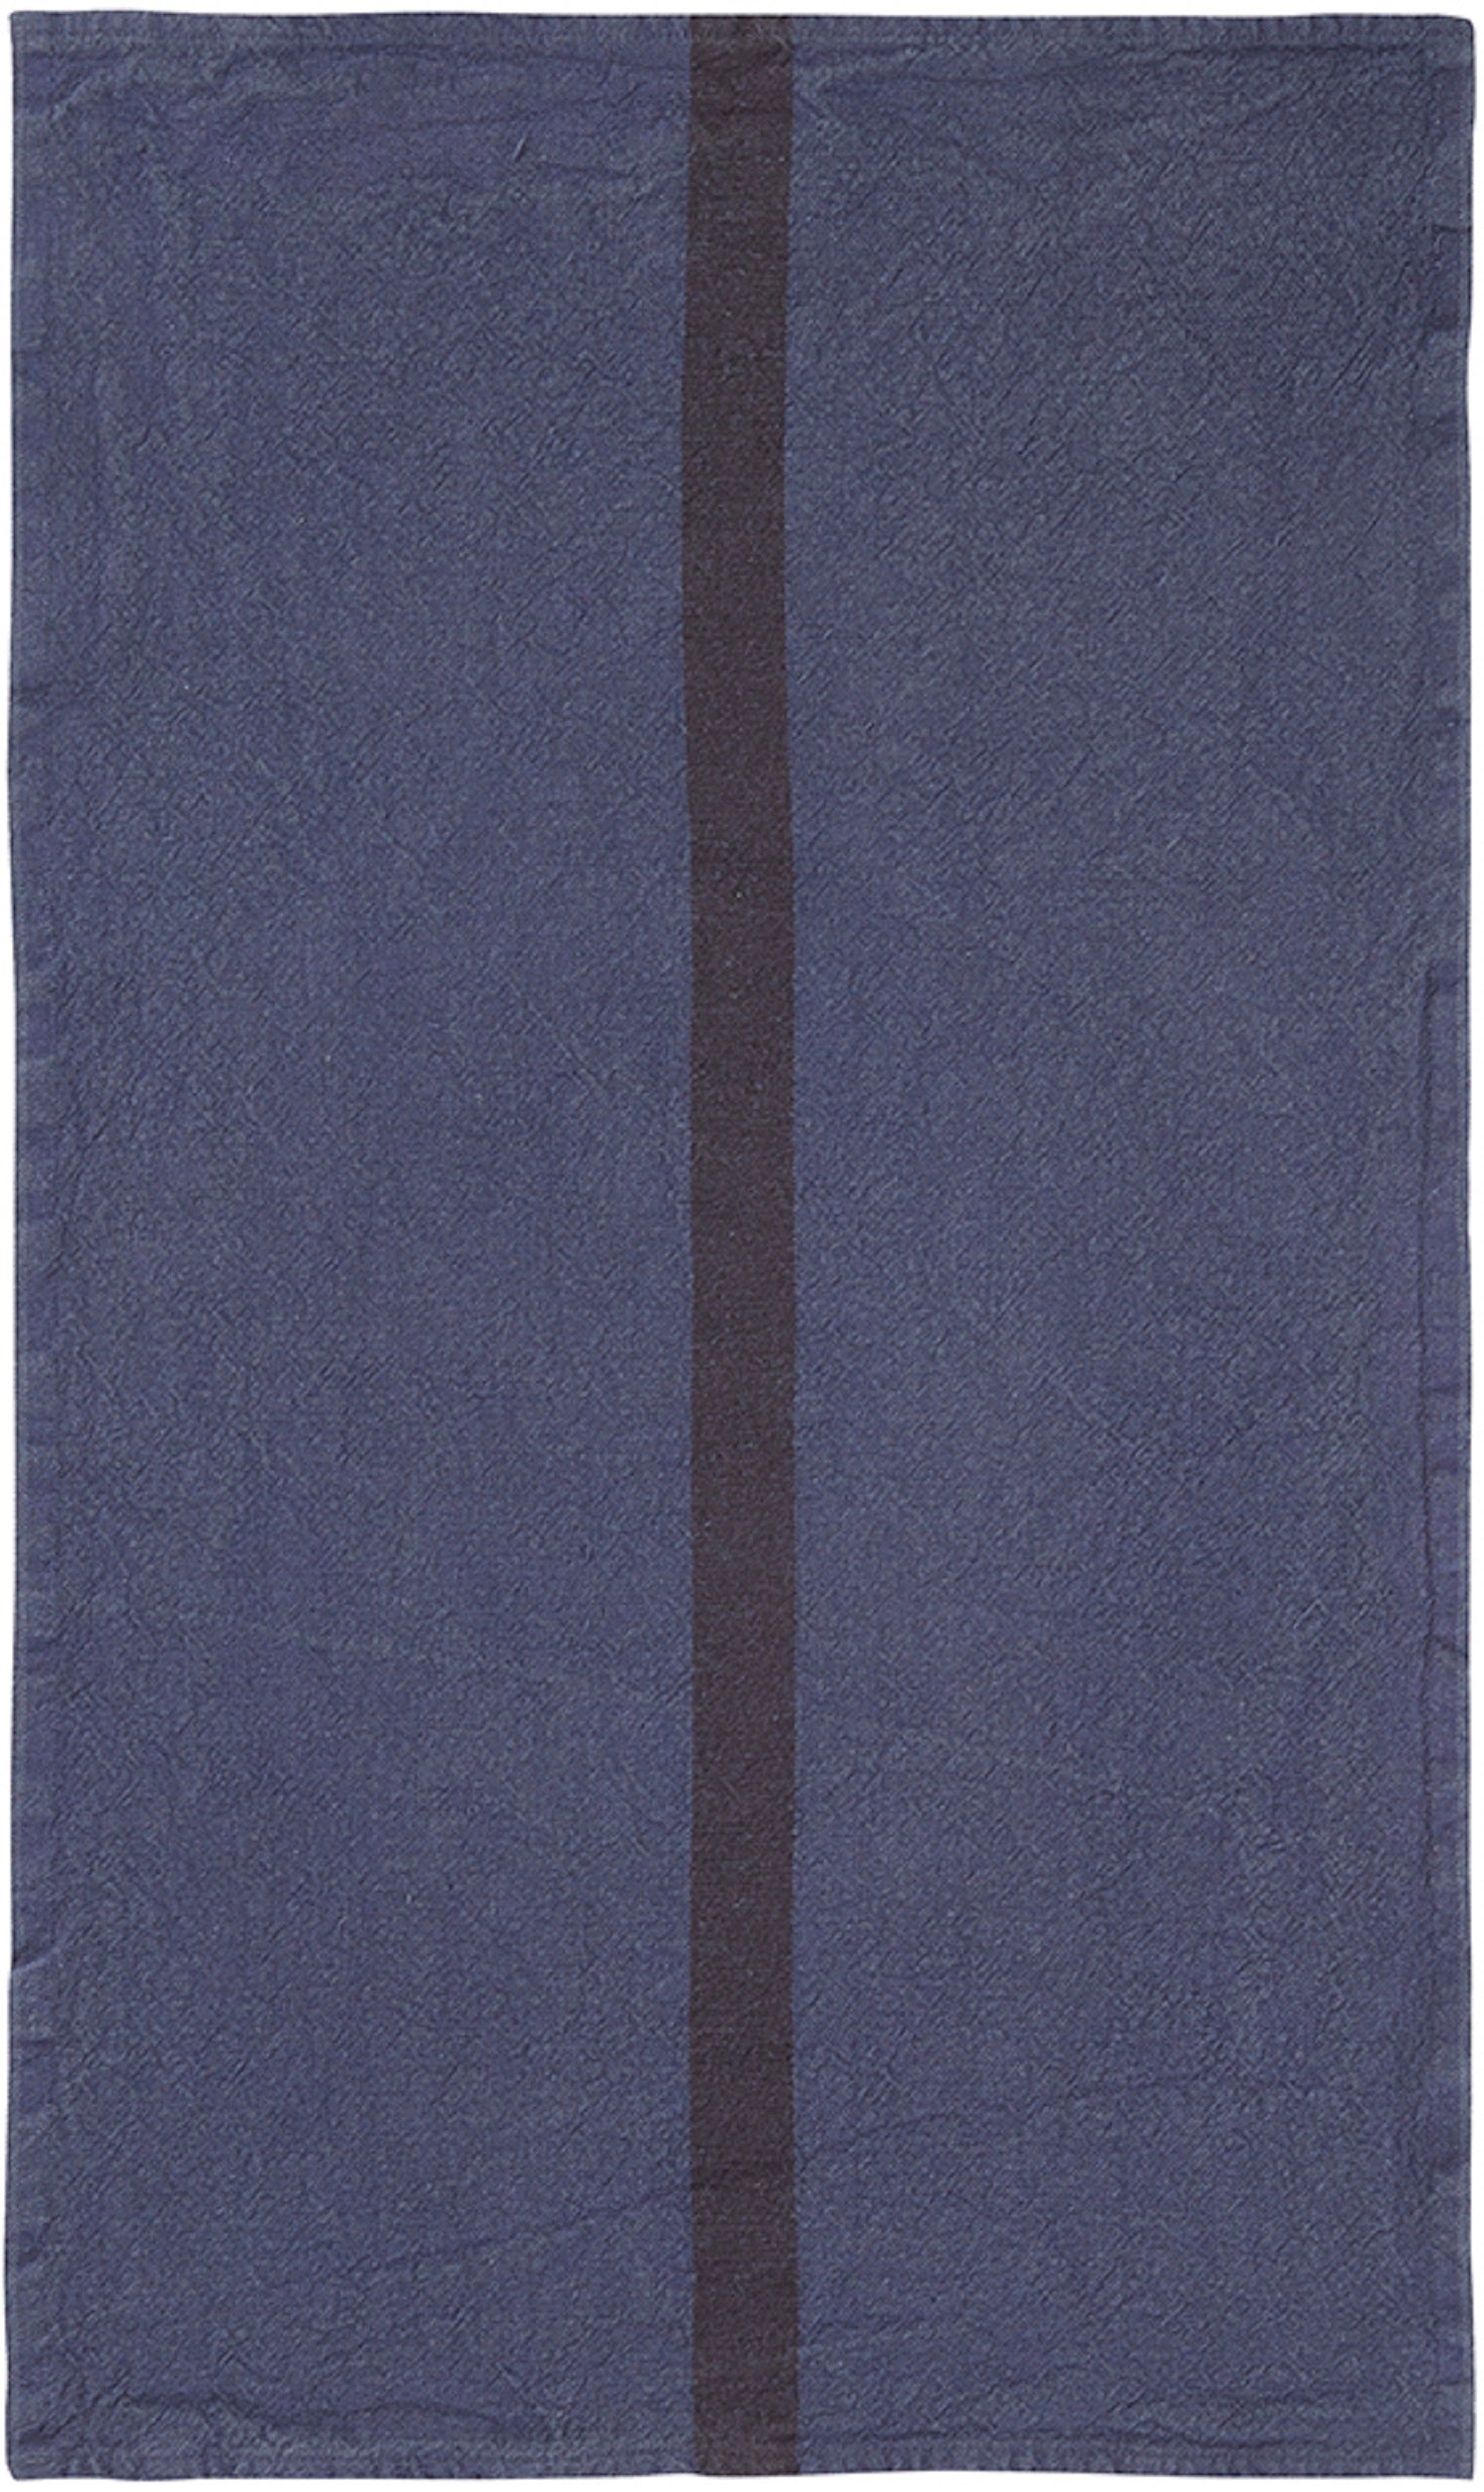 Charvet Editions "Doudou Stripe" (Indigo & Marron), Natural woven linen tea towel. Made in France.